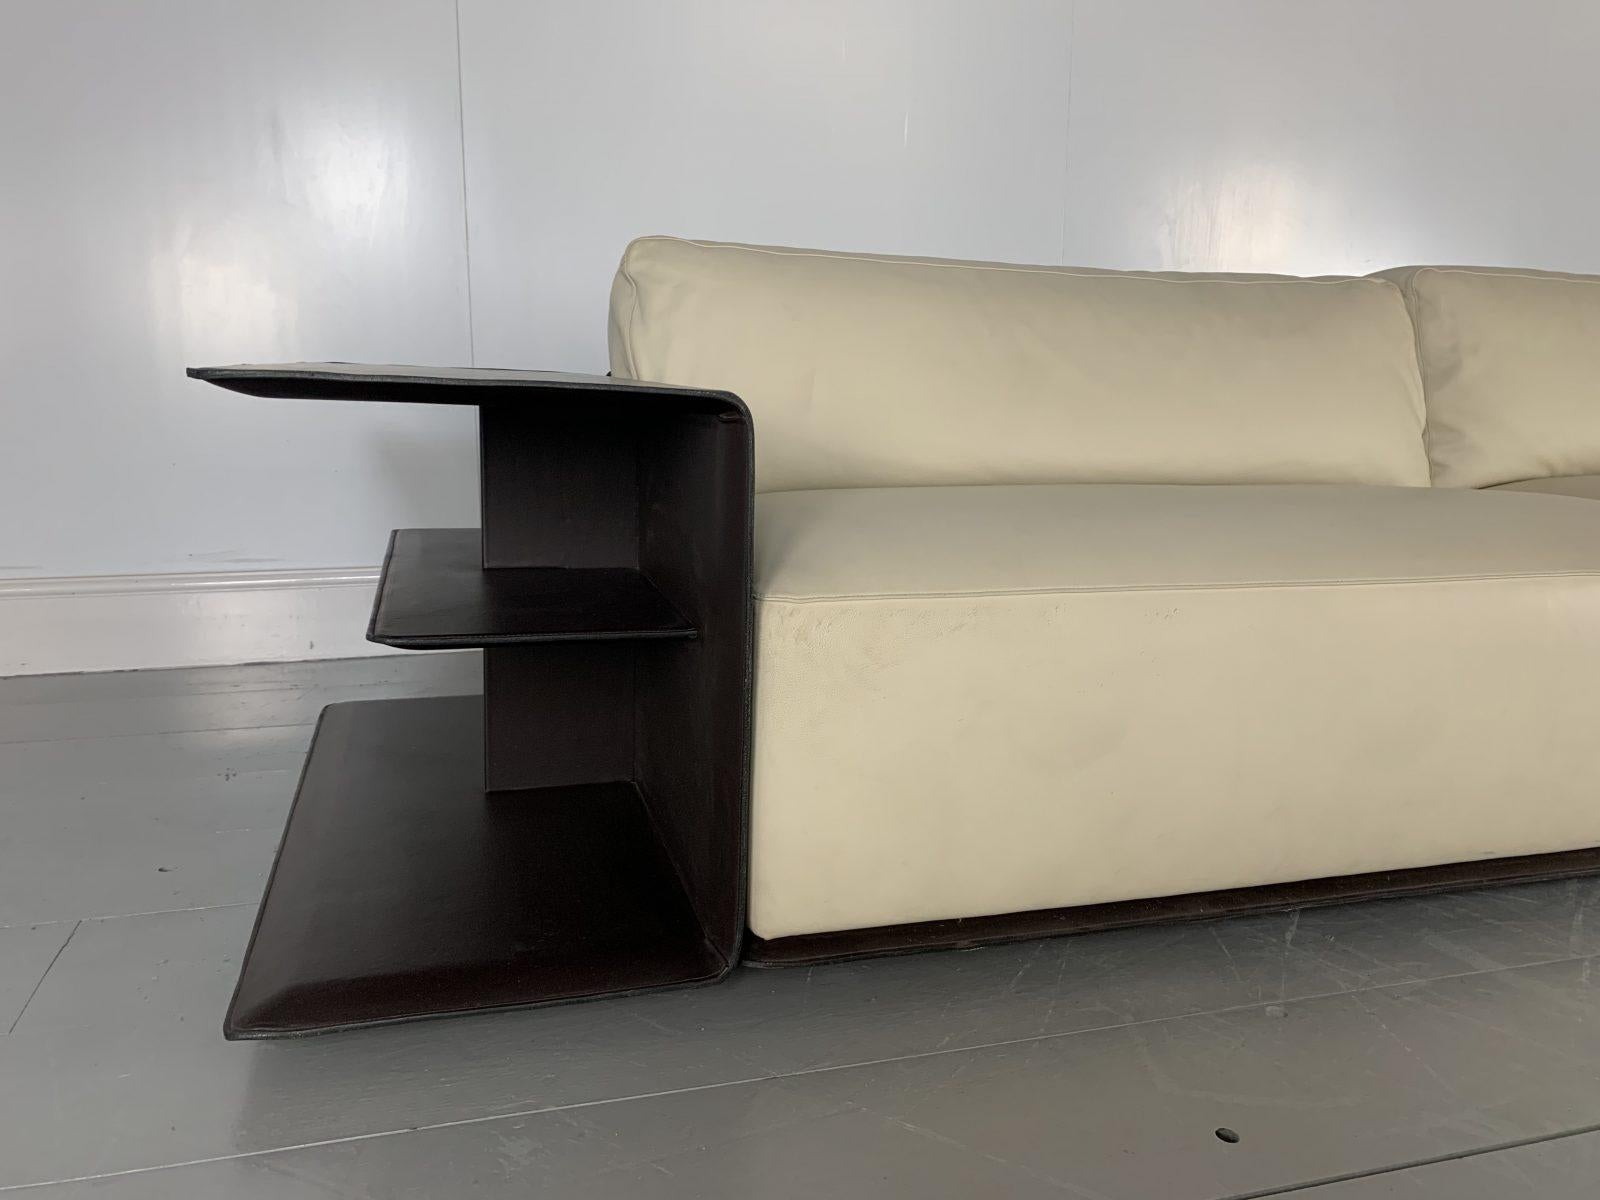 Sublime Poltrona Frau “Cassiopea” Large Sofa with Bookcase-End in Saddle Leather 1